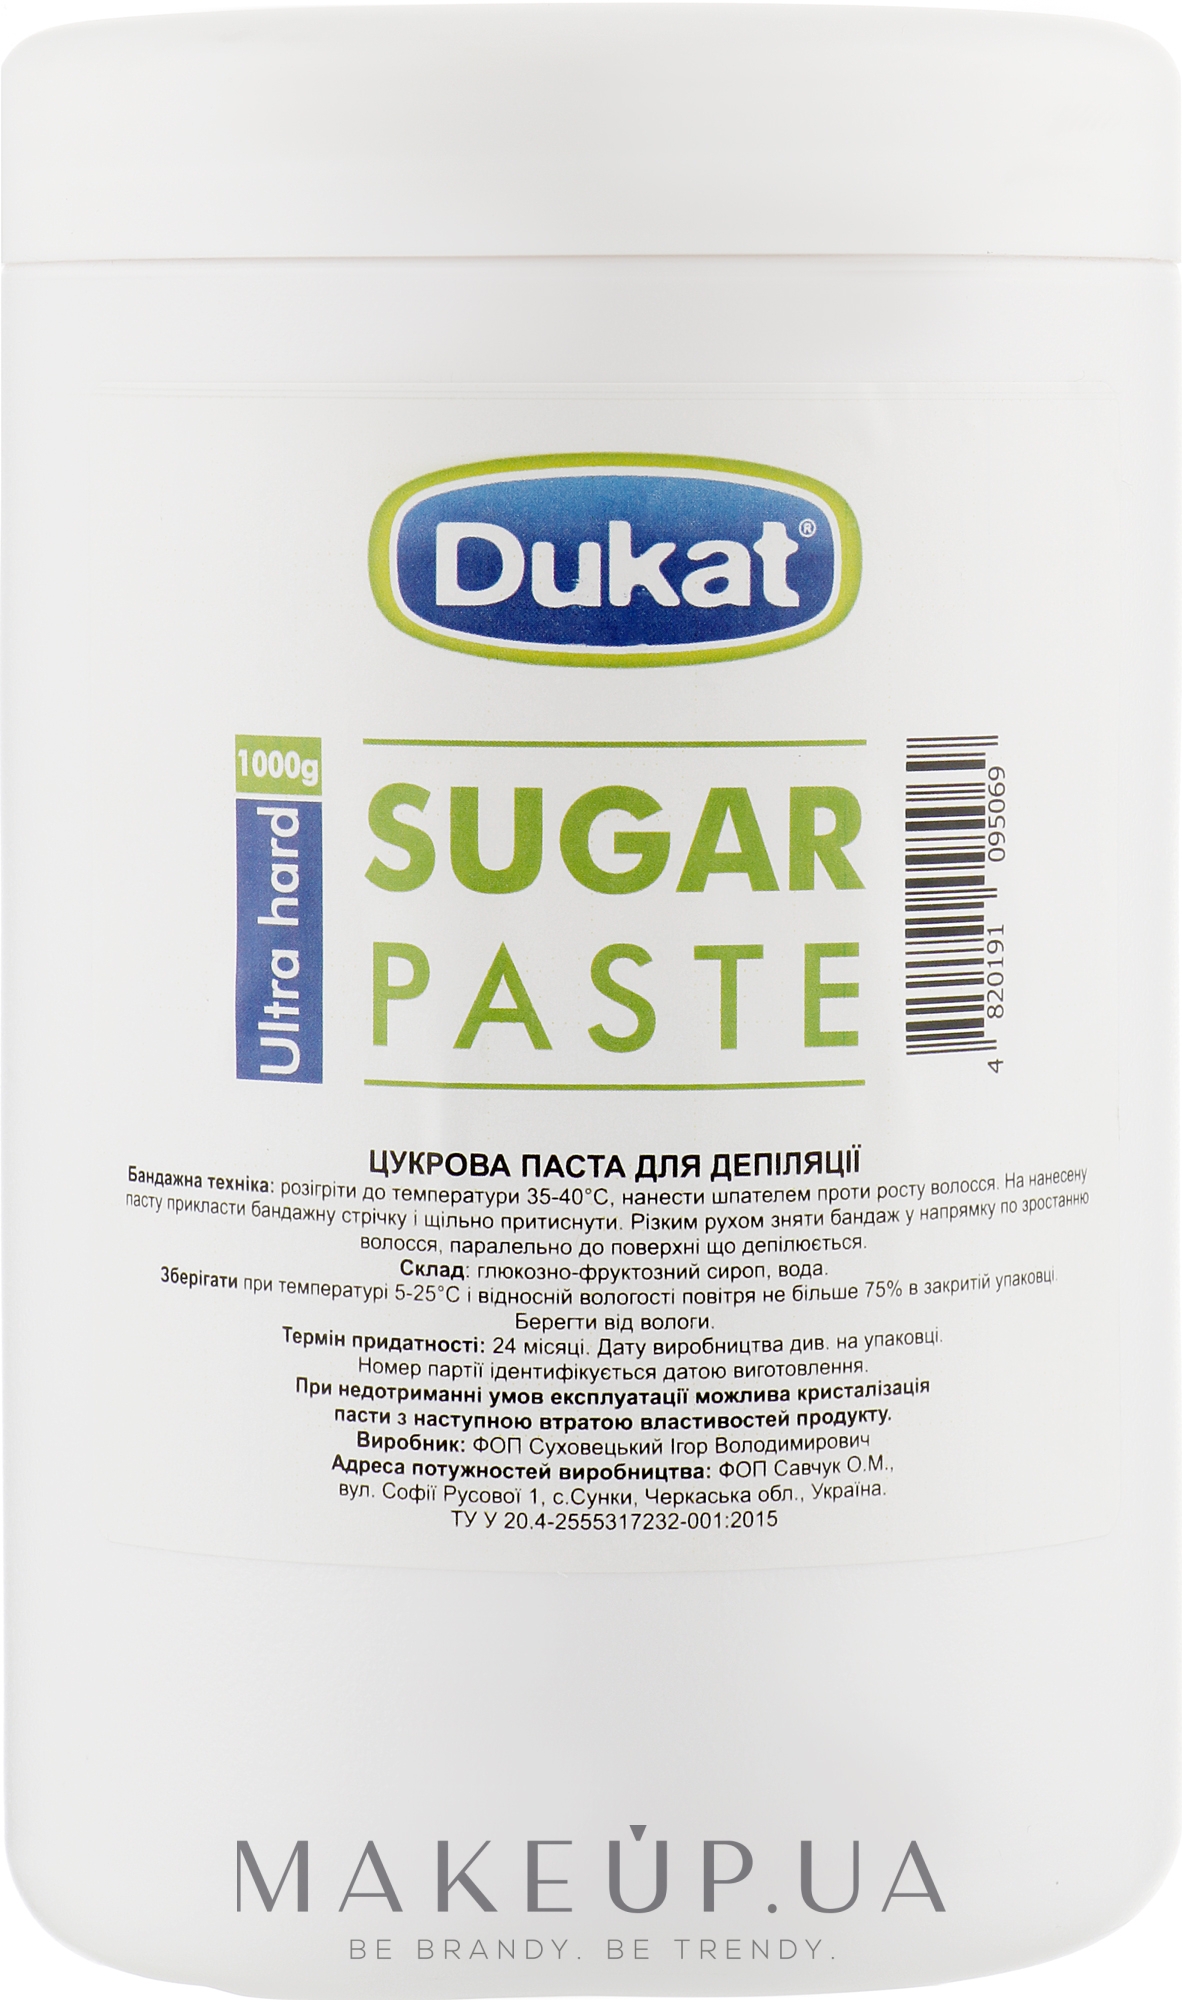 Сахарная паста для депиляции ультра твердая - Dukat Sugar Paste Extr — фото 1000g